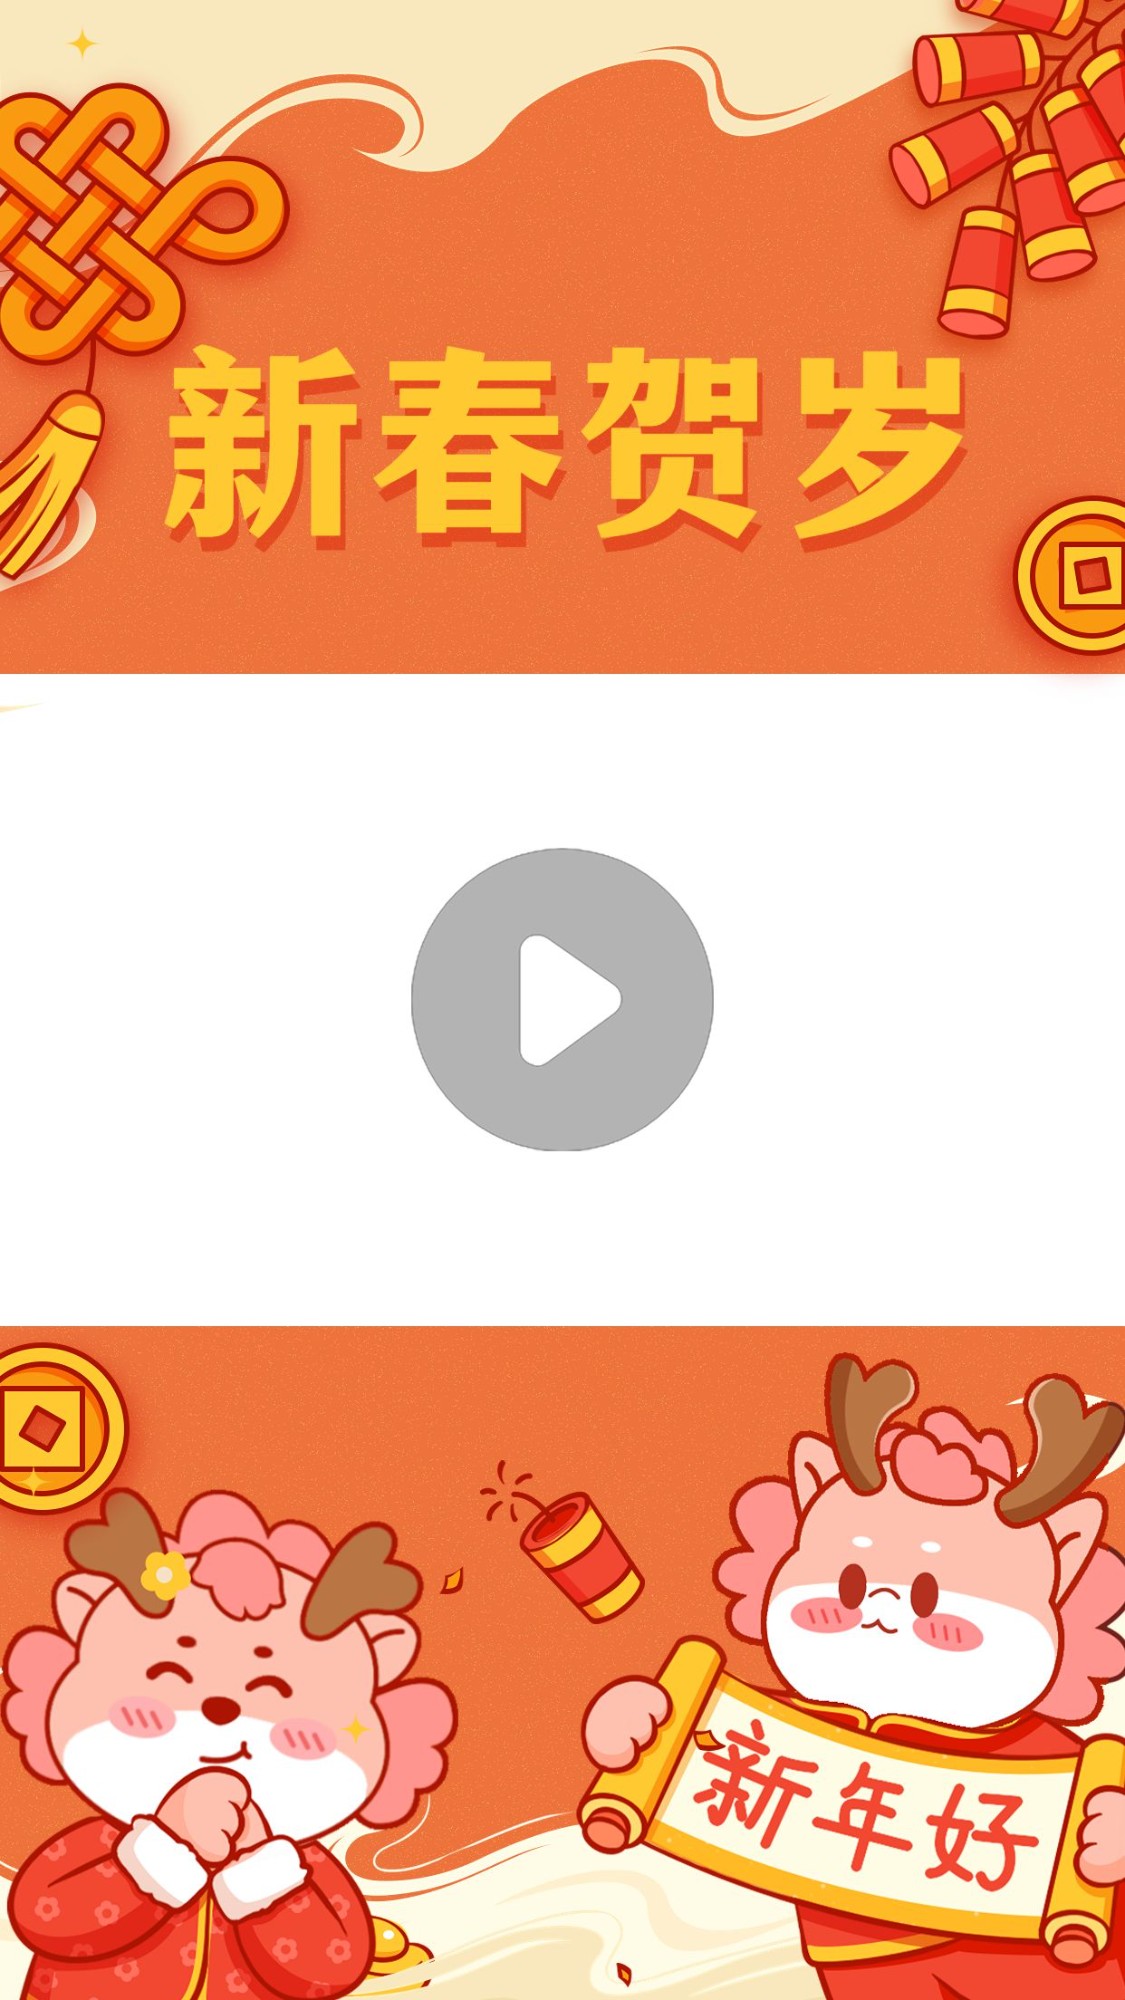 教育培训龙年大吉春节祝福视频边框